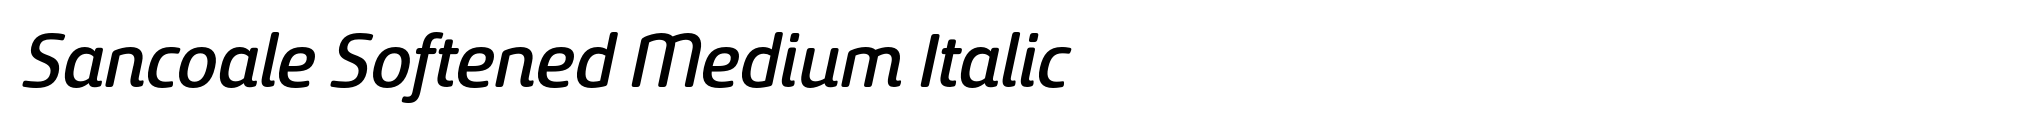 Sancoale Softened Medium Italic image